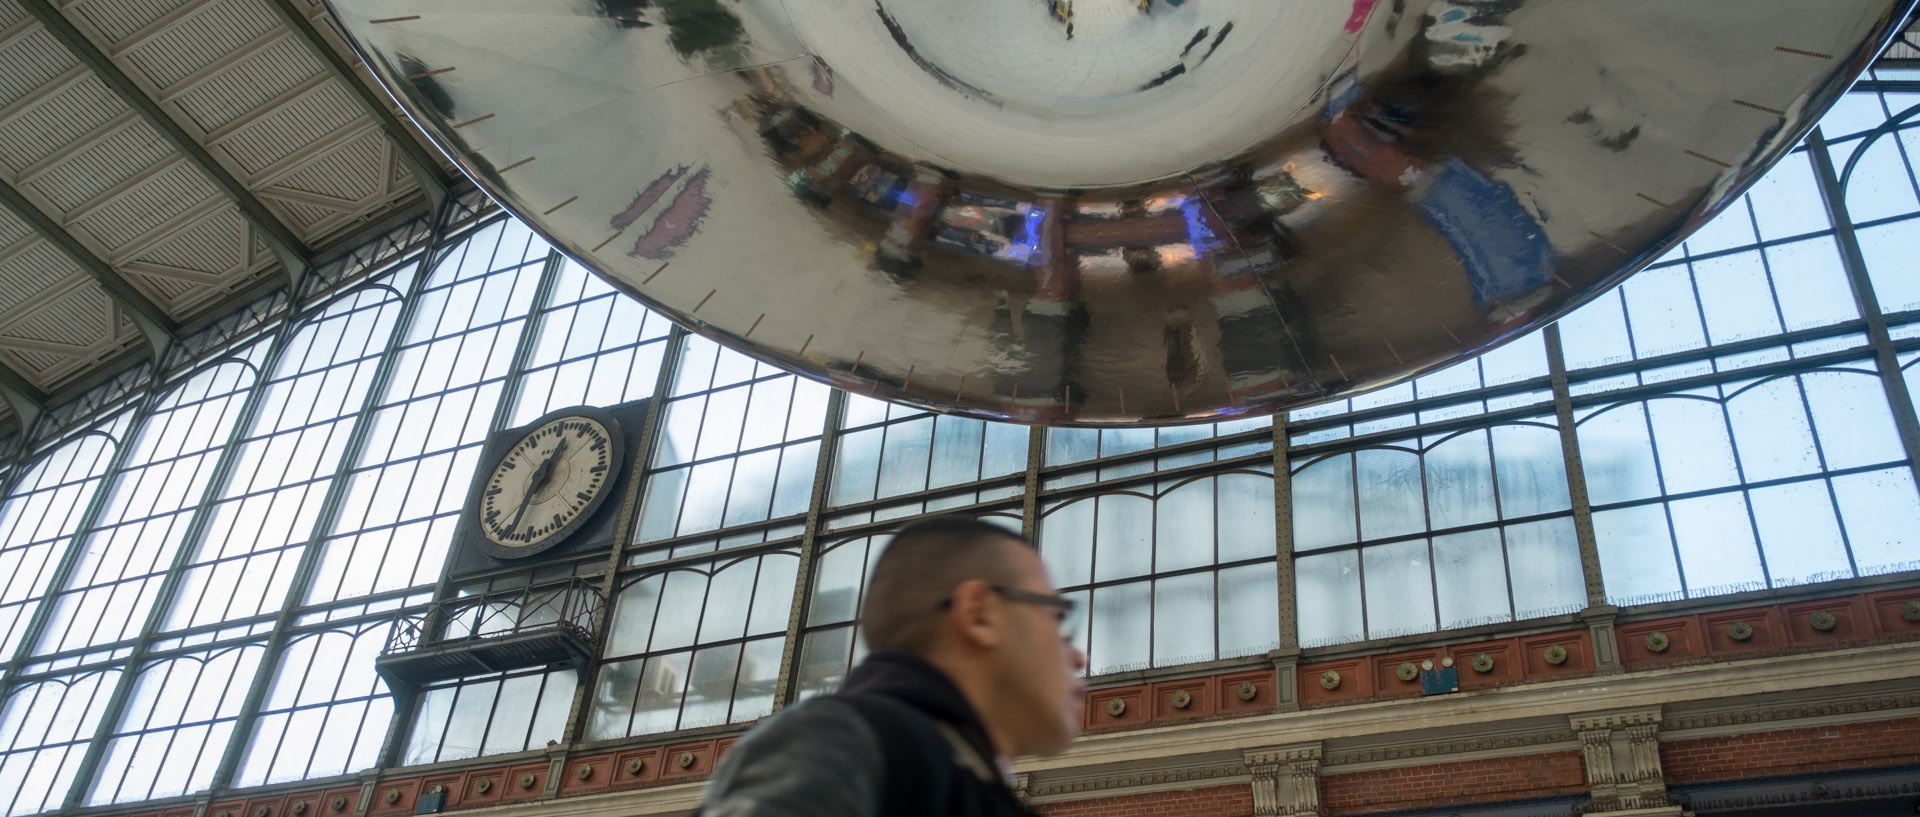 La soucoupe volante de Ross Lovegrove, à la gare de Lille Flandres, pendant le festival Fantastic.